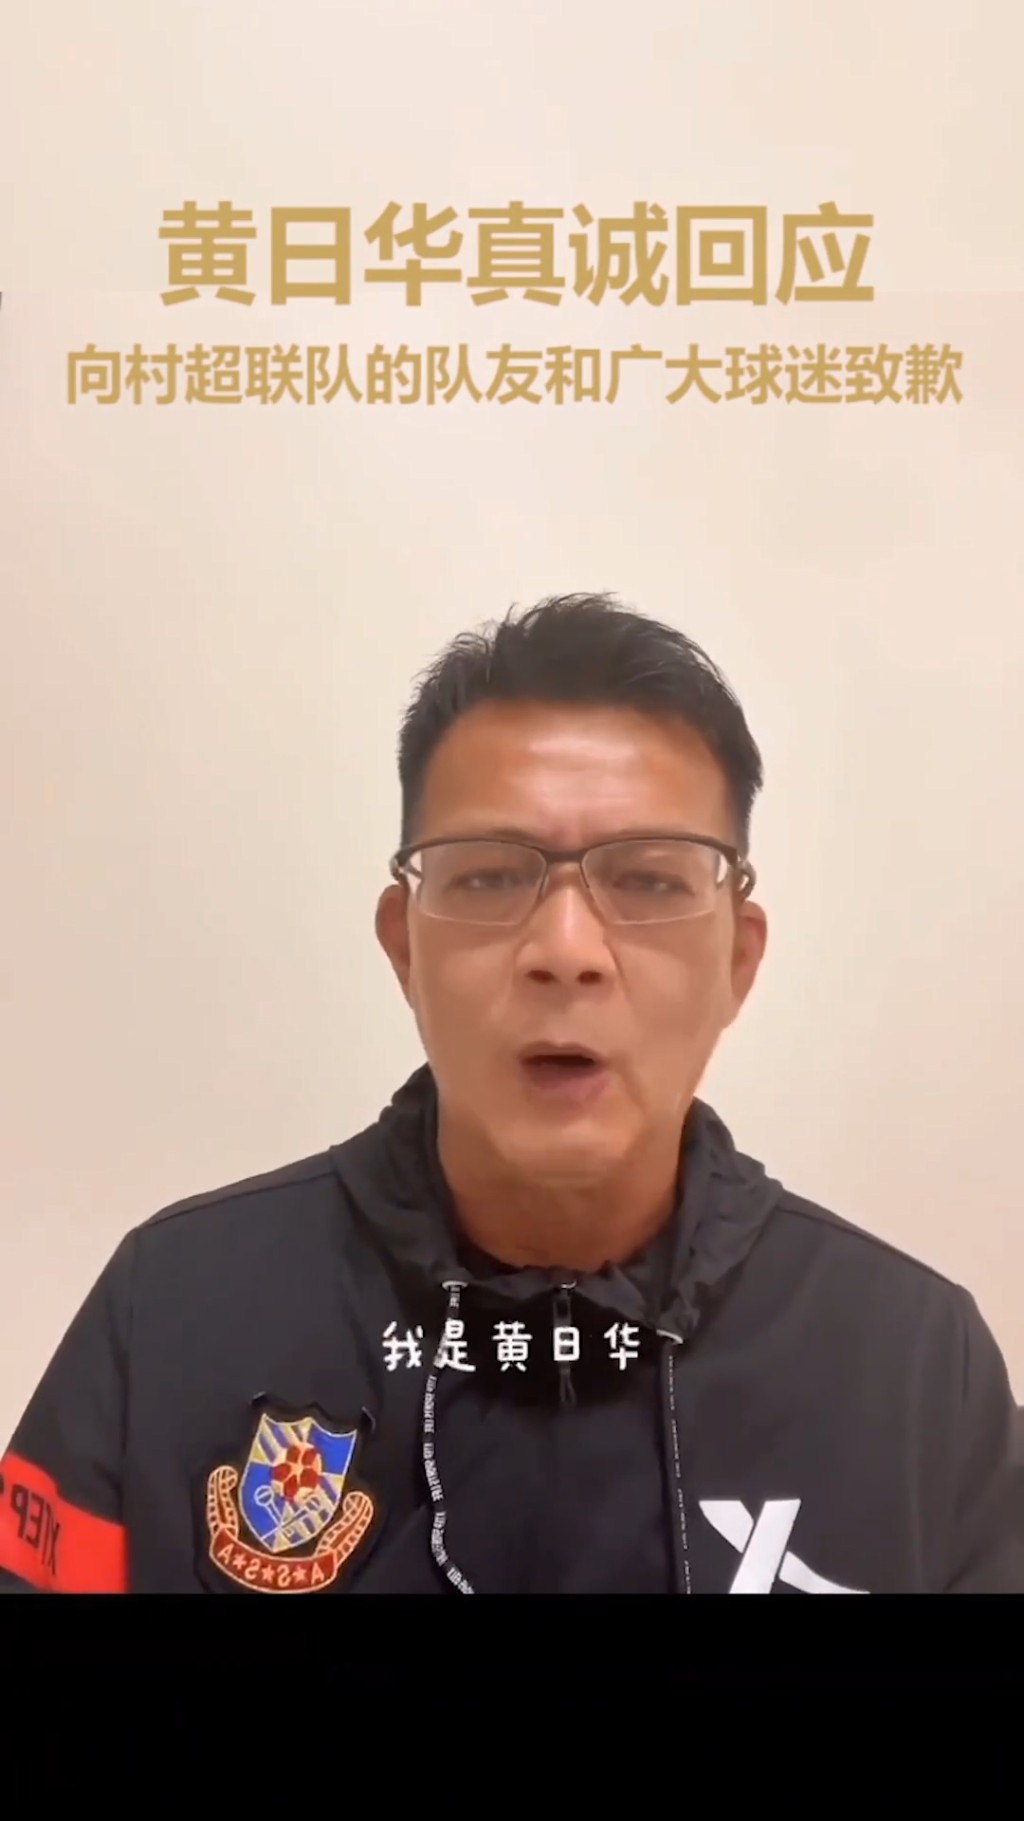 相隔三日黄日华在「明星足球队」的官方抖音账号拍片道歉。